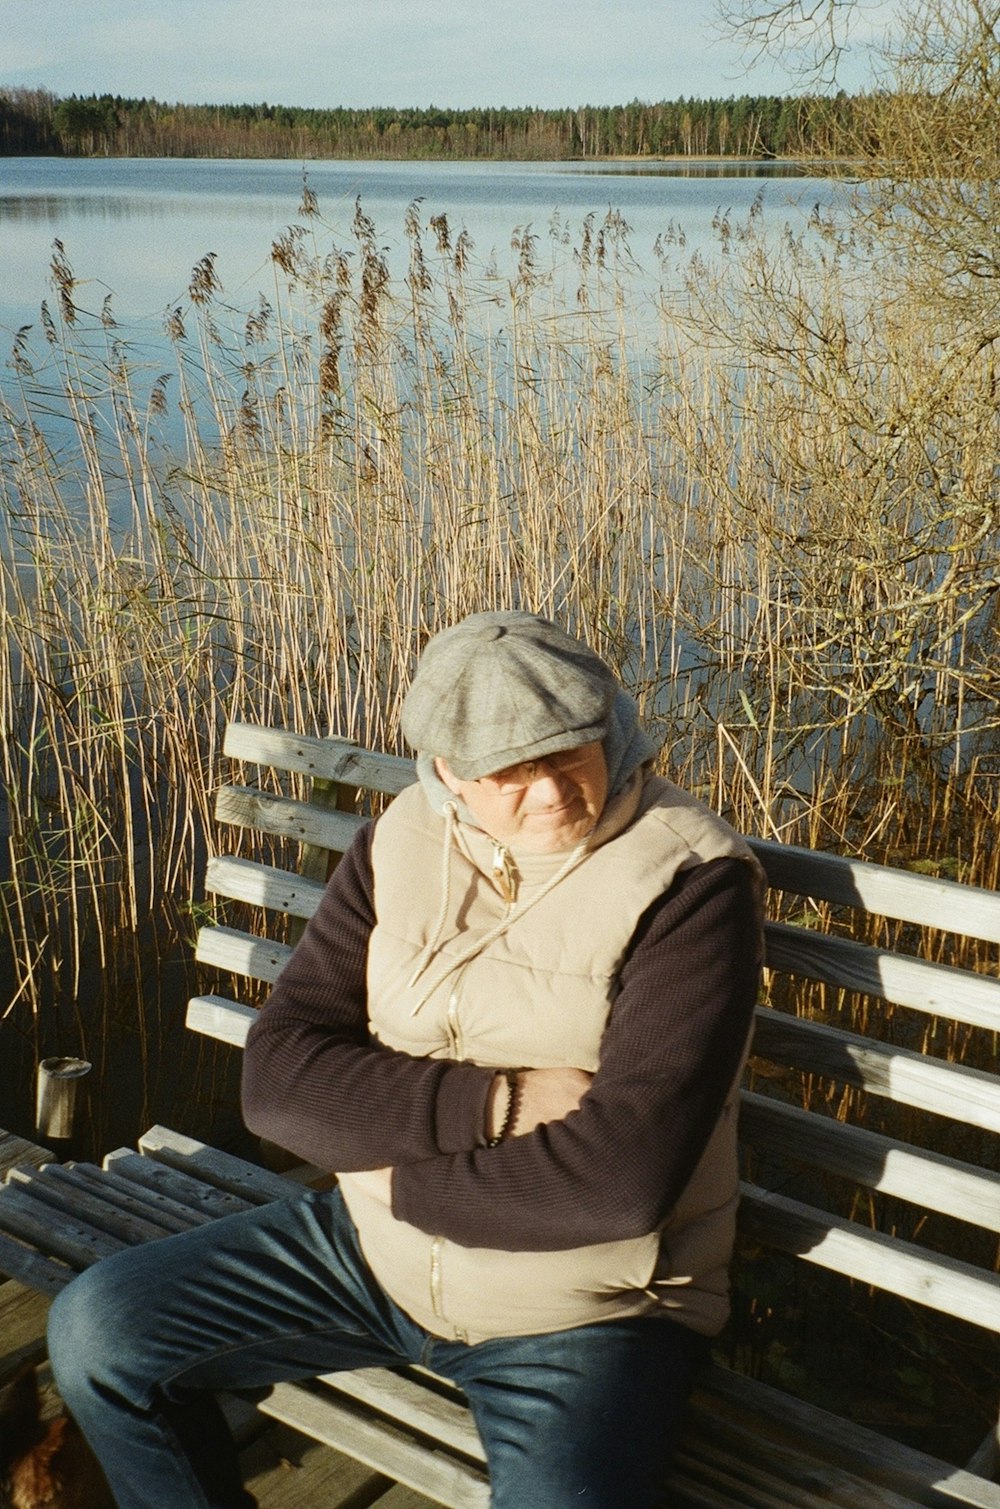 Un hombre sentado en un banco junto a un cuerpo de agua